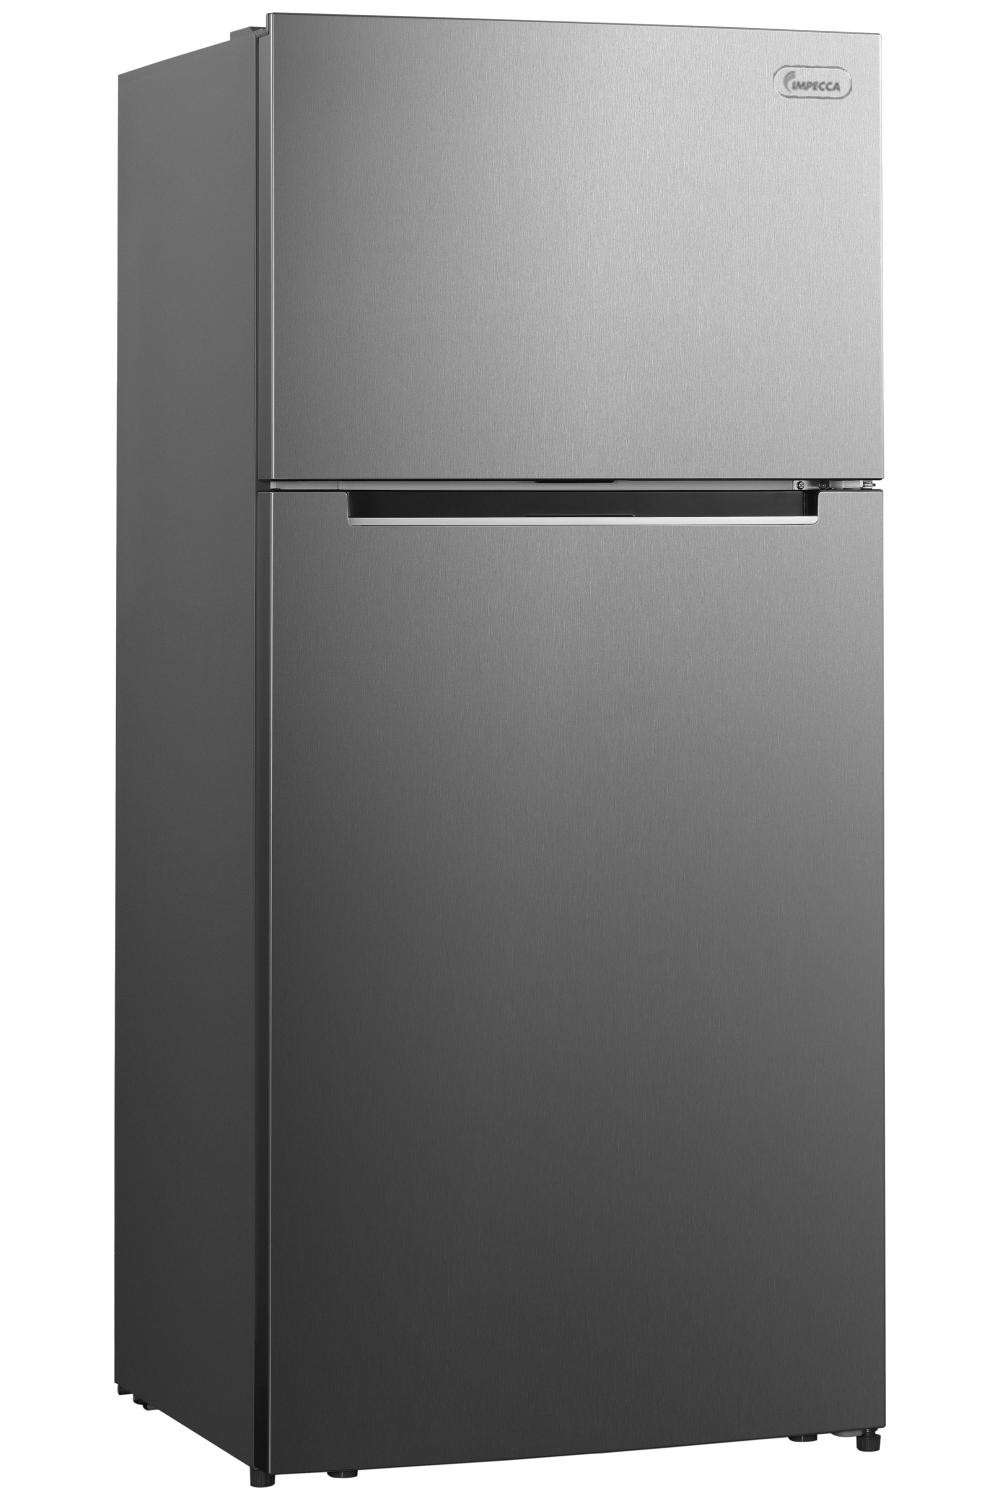 17 Cu Ft Counter Depth Refrigerator